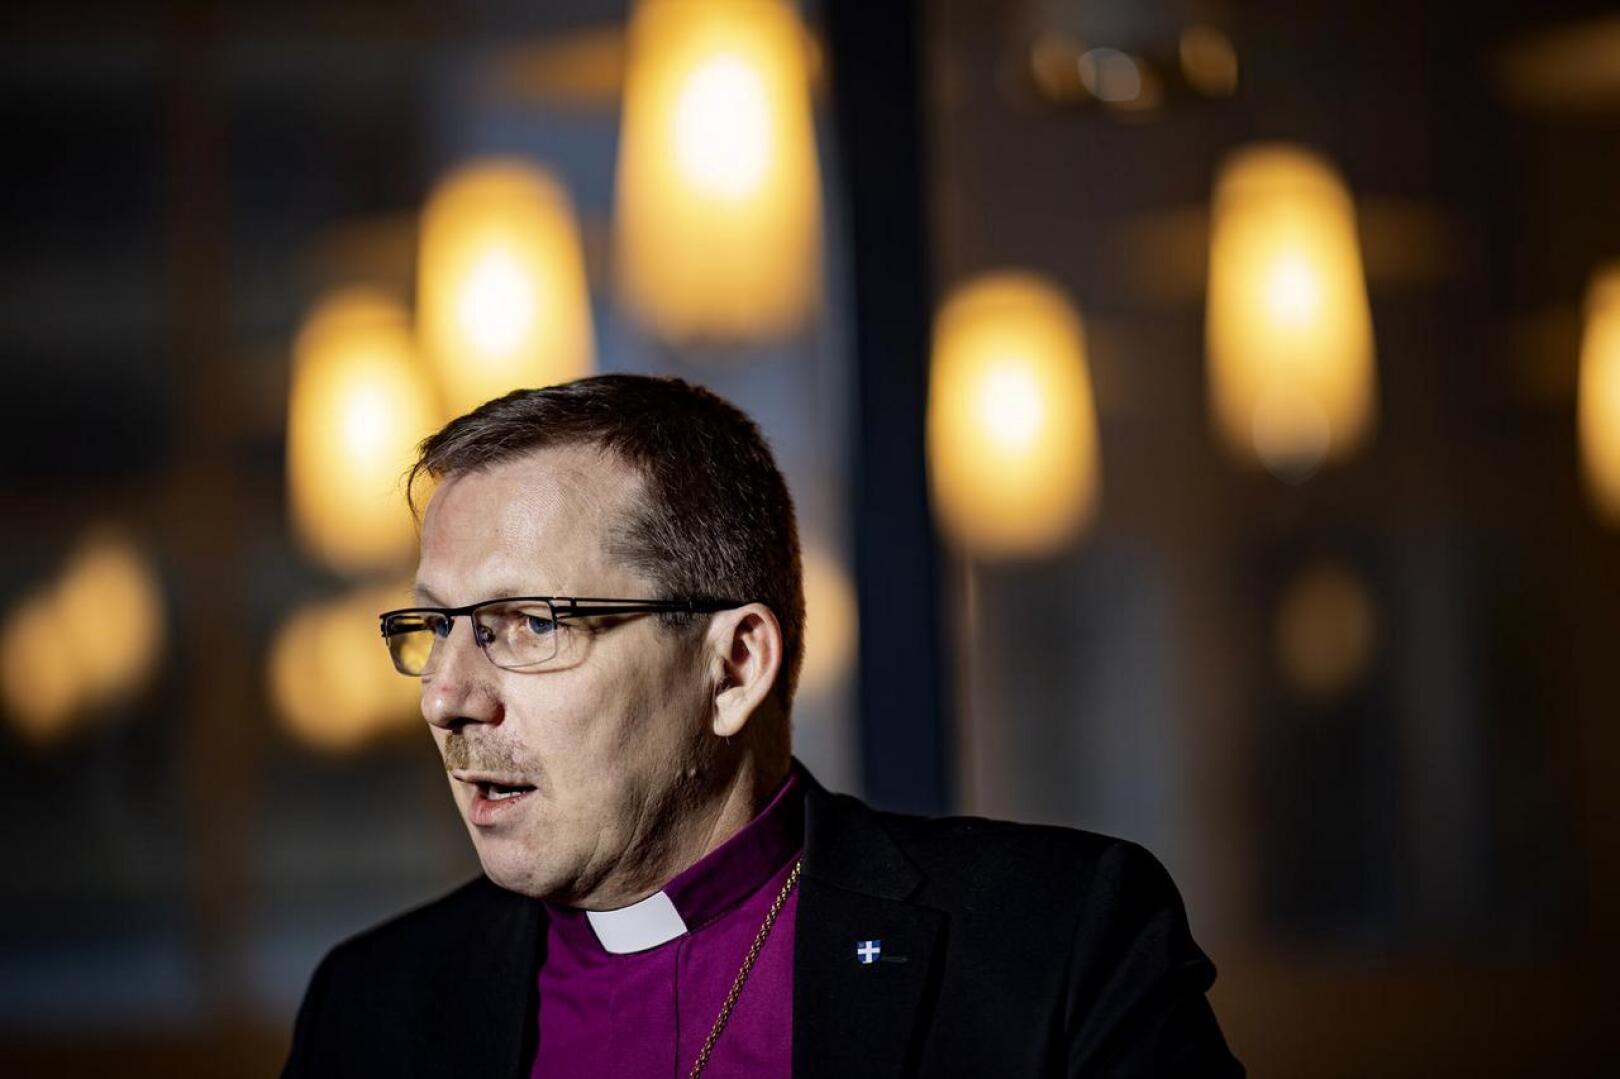 Piispa on huolissaan, että uskonnosta ja kirkon asemasta käyty keskustelu on viime vuosina kärjistynyt. 